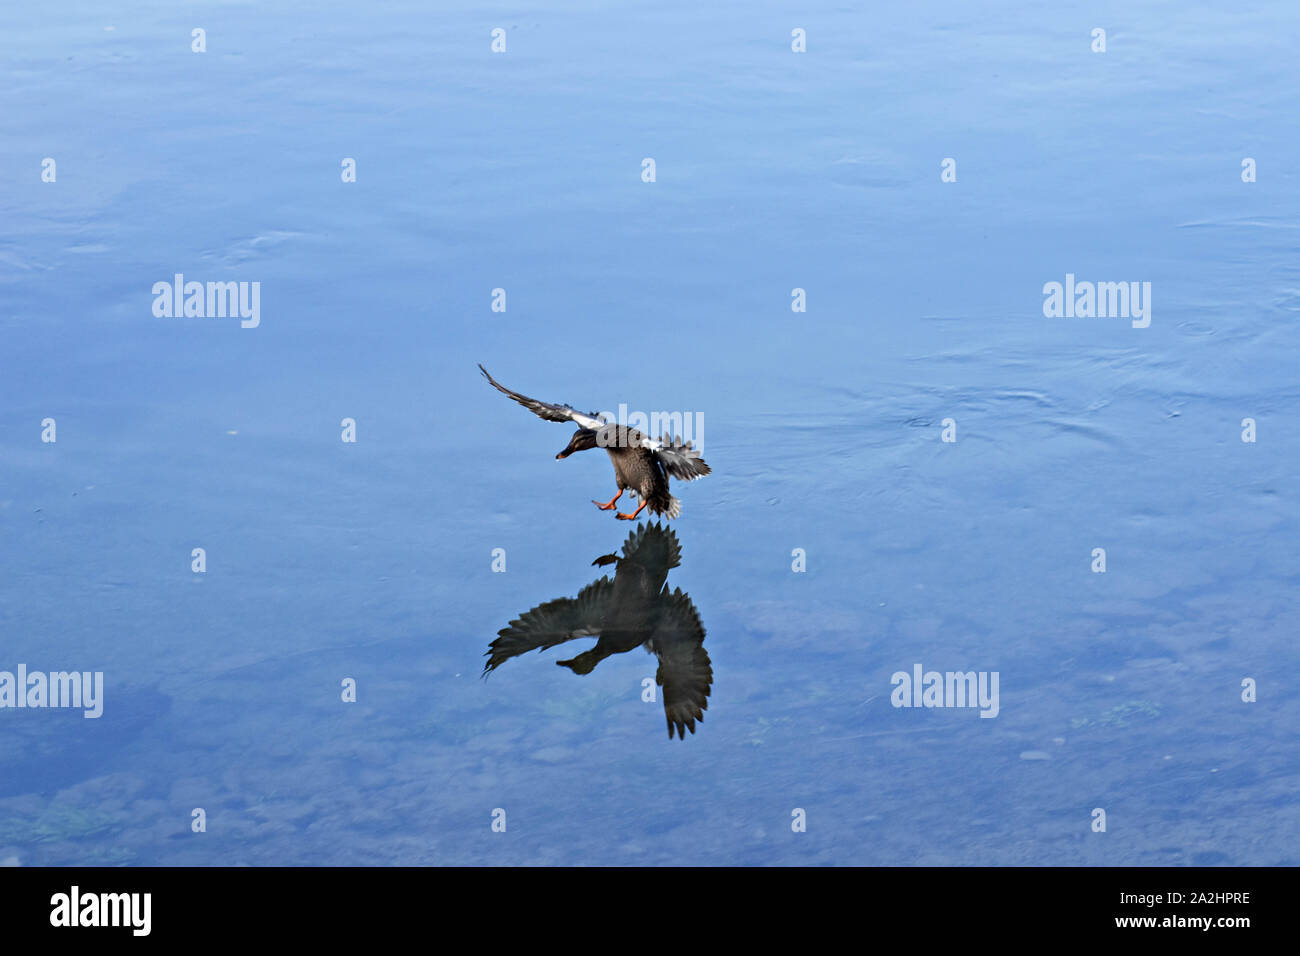 Bella anatra selvatica di atterraggio su una chiara acqua di lago/ fauna animale fotografia naturalistica Foto Stock